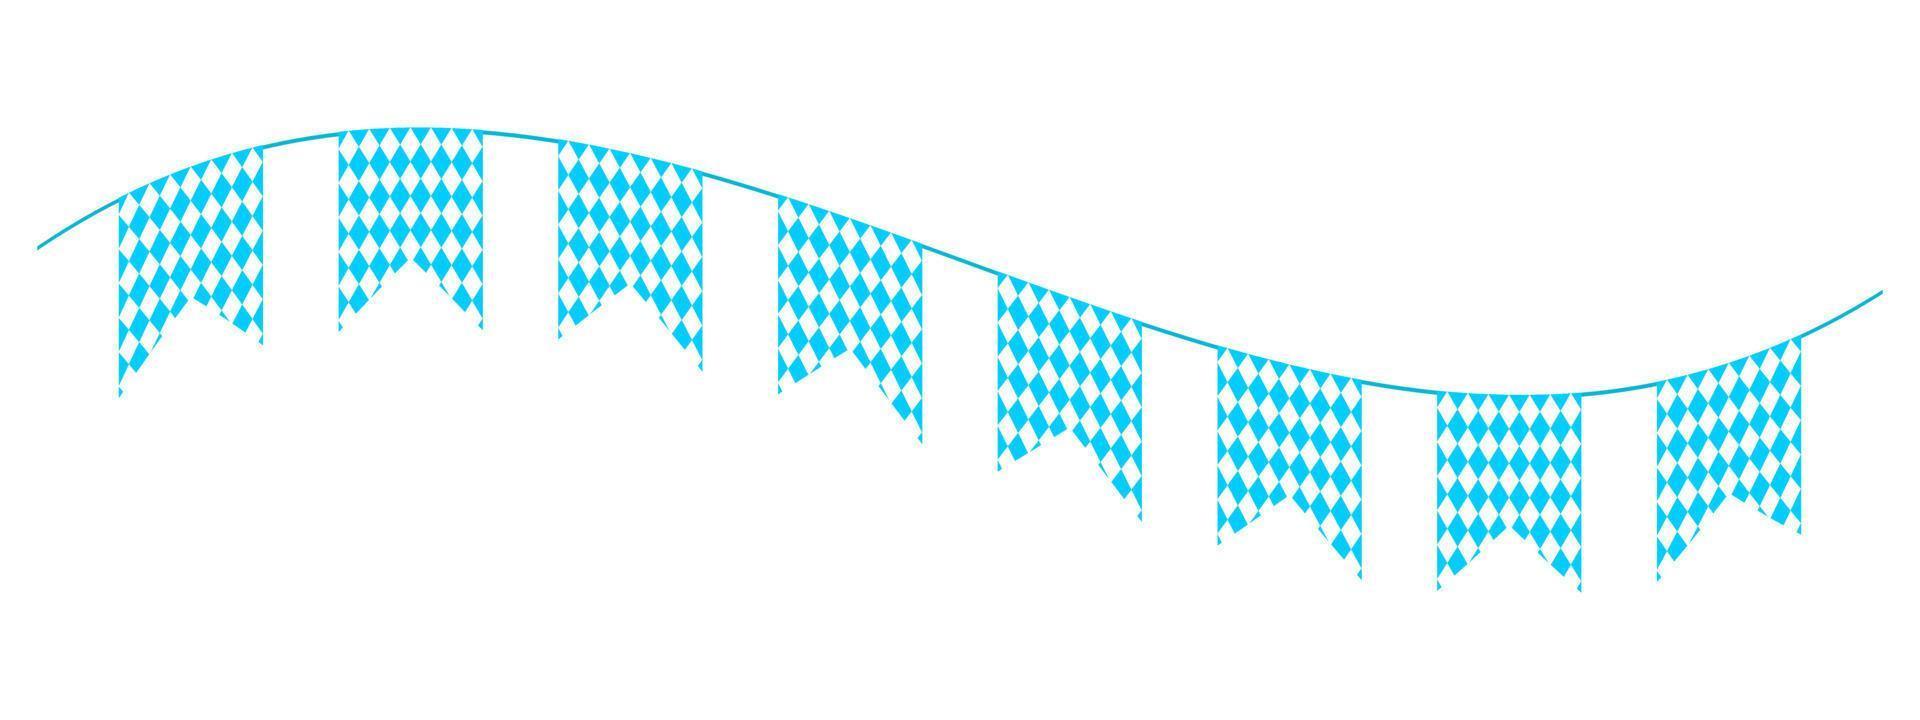 ondulación Oktoberfest verderón en bávaro bandera colores. guirnalda para tradicional alemán cerveza fest con azul y blanco rombo. decoración para fiesta, invitación tarjeta, póster vector